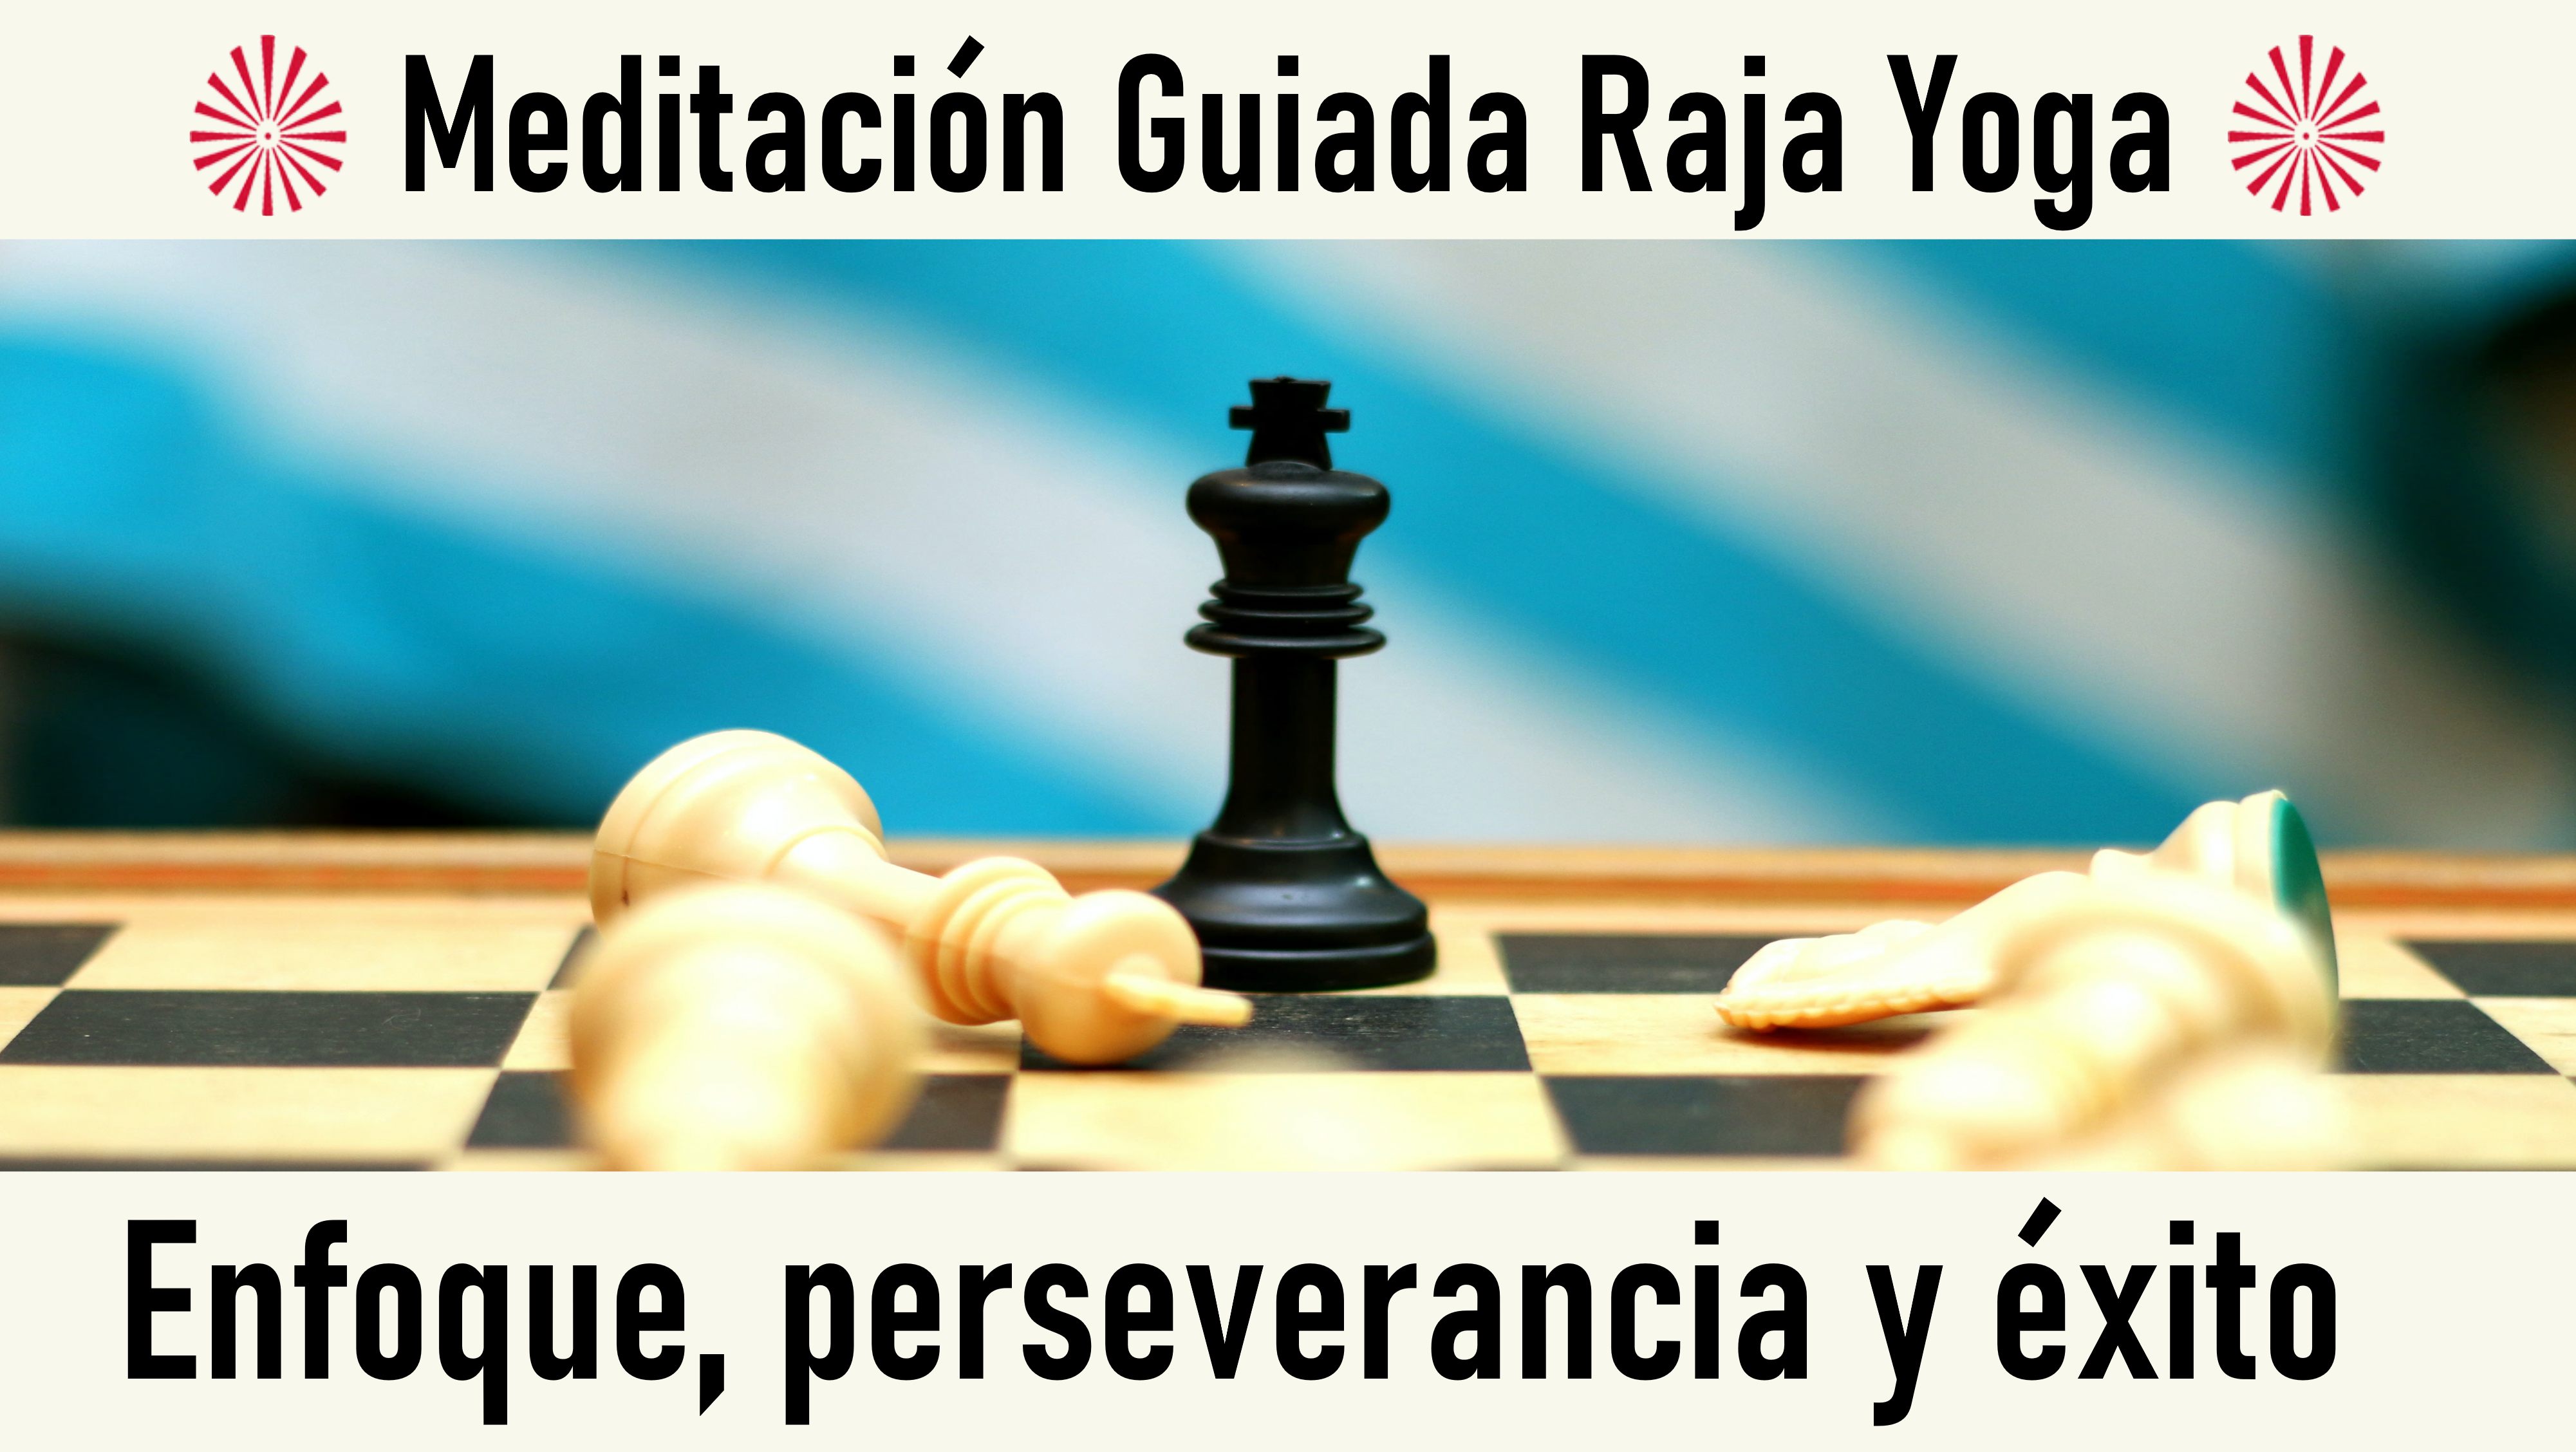 Meditación Raja Yoga: Enfoque, perseverancia y éxito (11 Octubre 2020) On-line desde Valencia